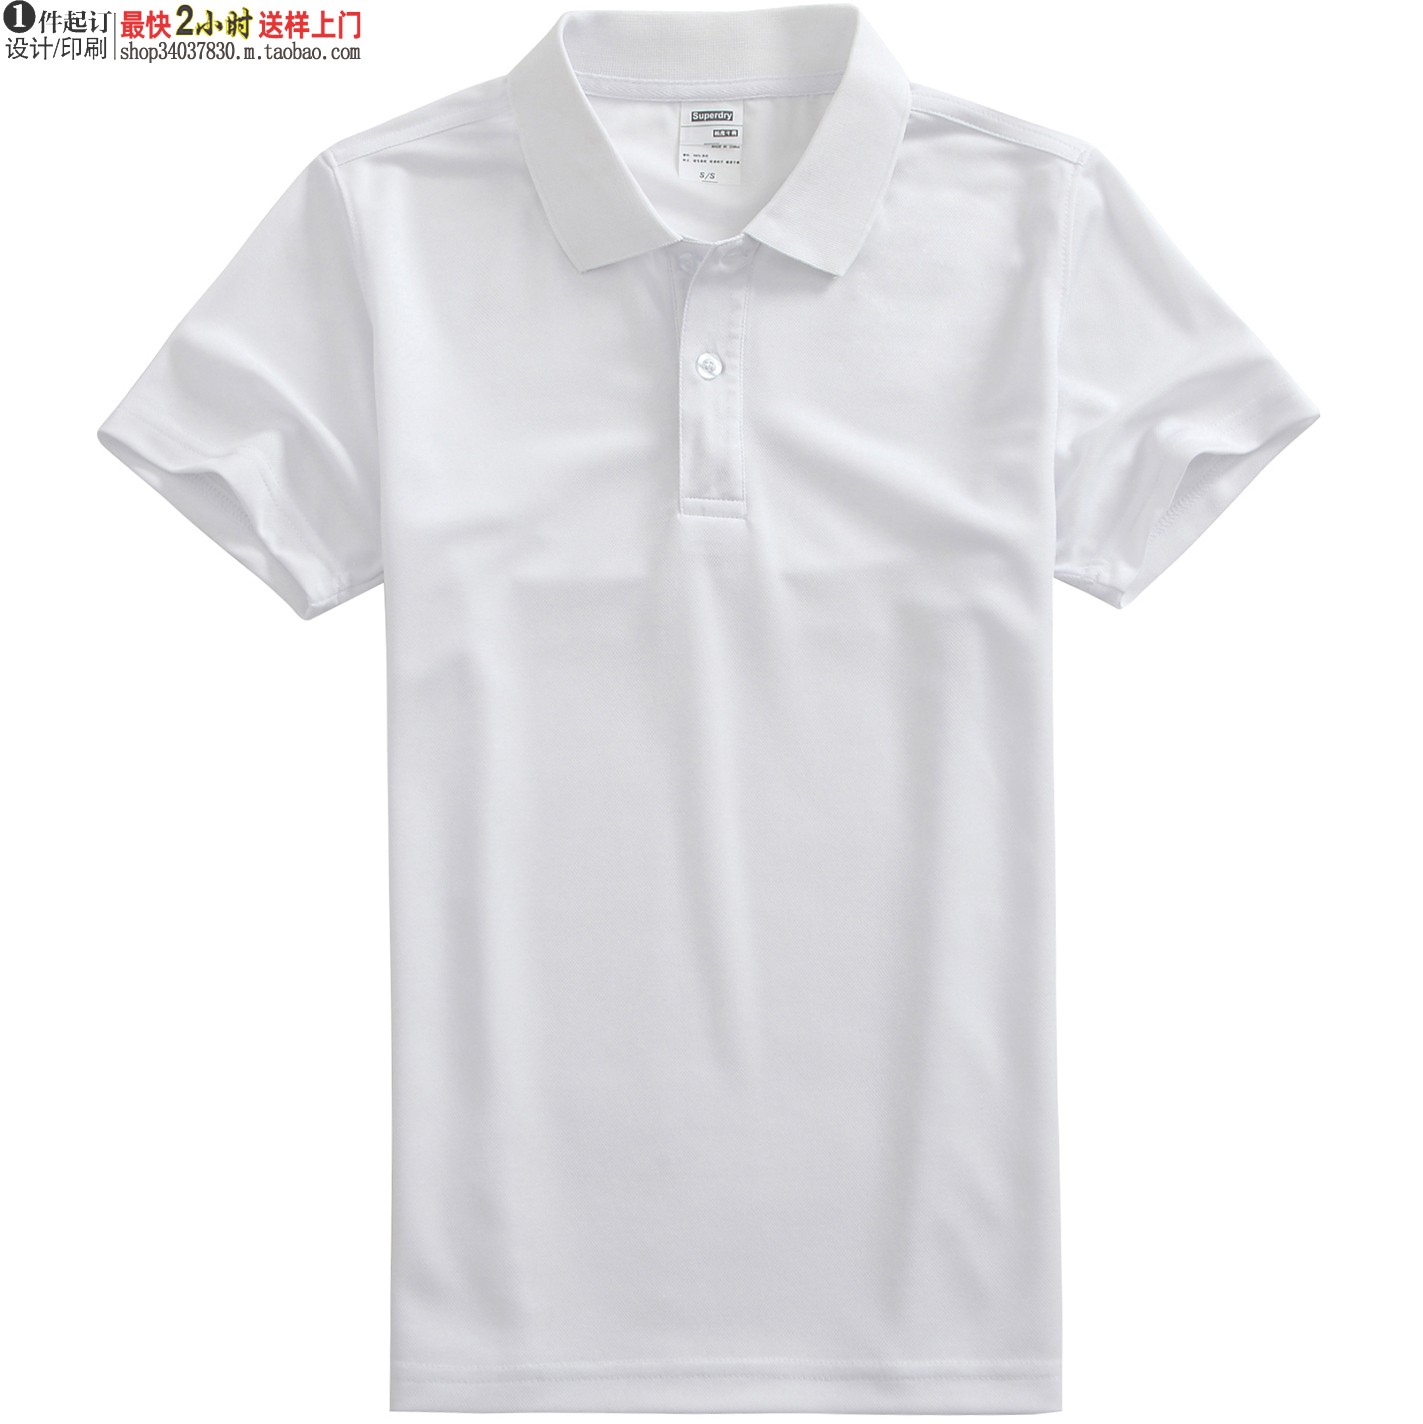 白色P1510现货速干翻领T恤衫聚酯纤维透气服装广告polo衫青年短袖